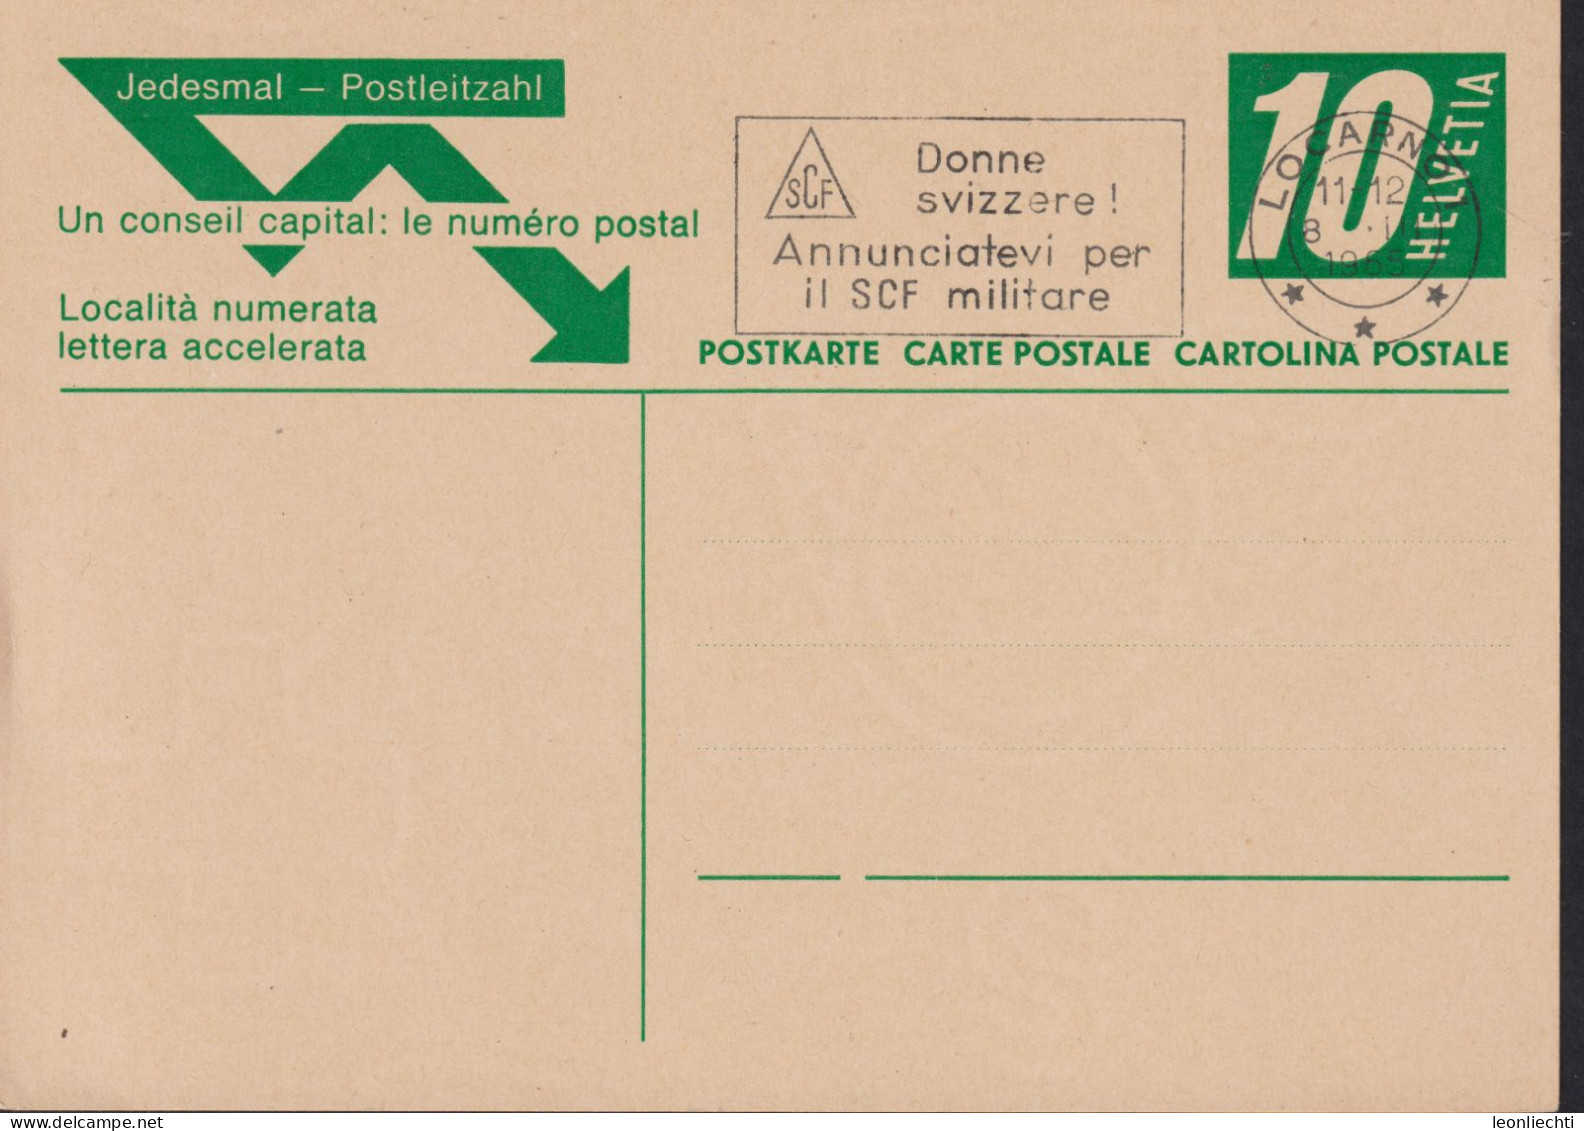 1965 , Jedesmal-Postleitzahl Zum:195 10 Cts  ⵙ LOCARNO 1 Flagg: Donne Svizzere ! Annunciatevi Per Il SCF Militare - Entiers Postaux